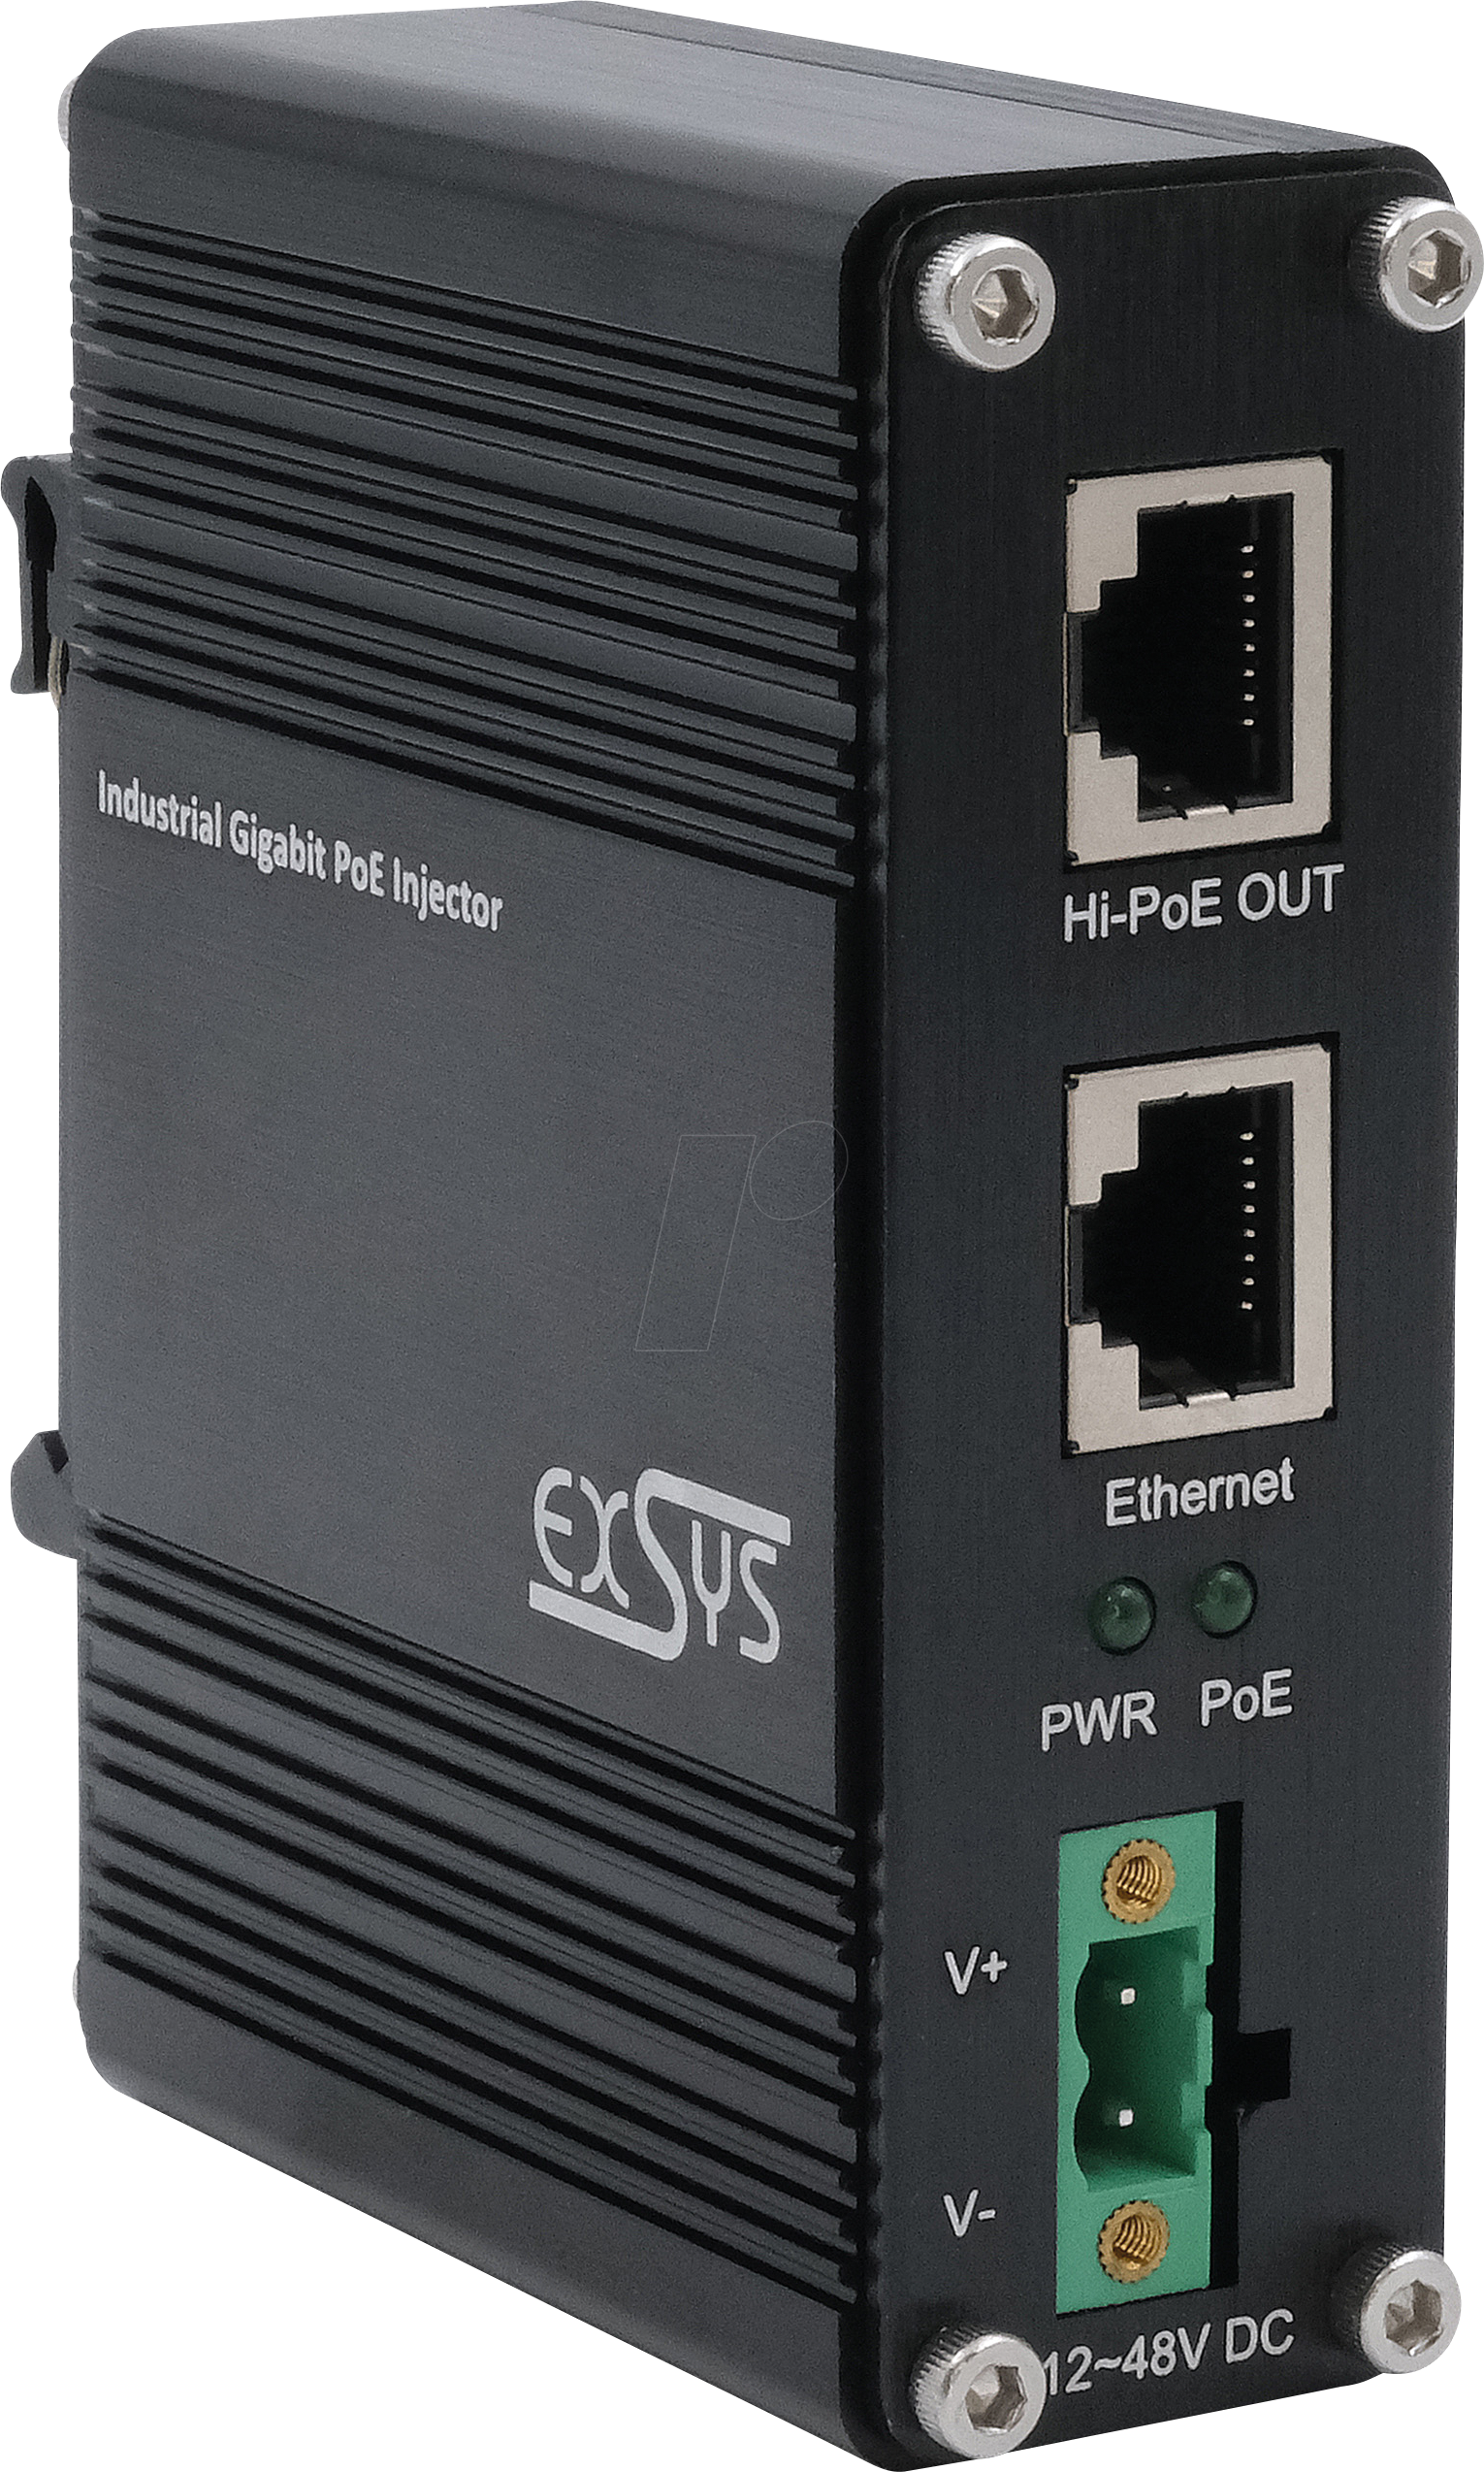 EXSYS EX-60310 - Power over Ethernet (PoE+) Gigabit Injektor, 60 W von EXSYS